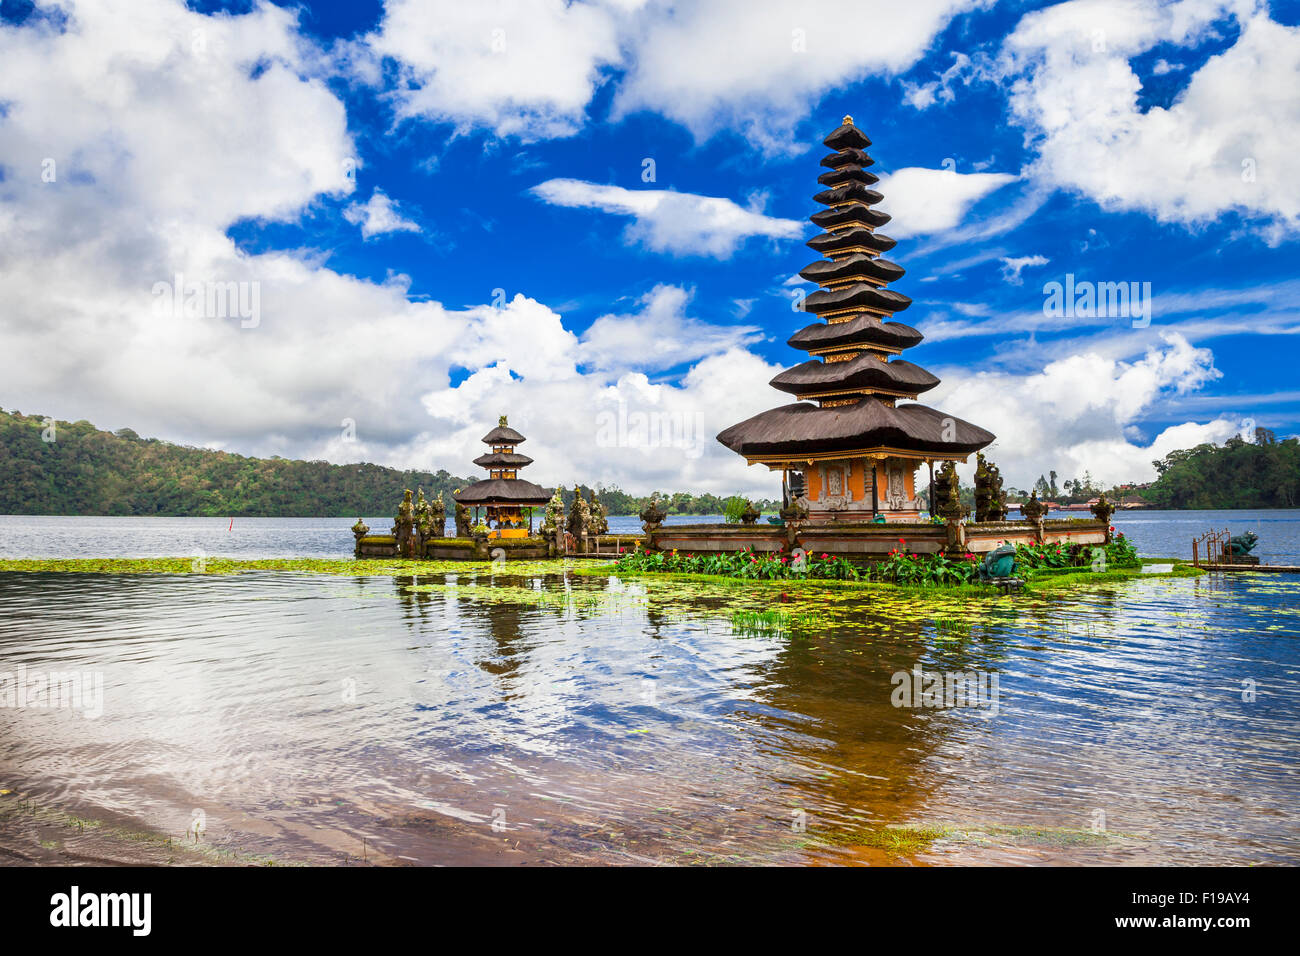 Temples mystérieux de l'île de Bali - célèbre dans le lac d'Ulun Danu Bratan Banque D'Images